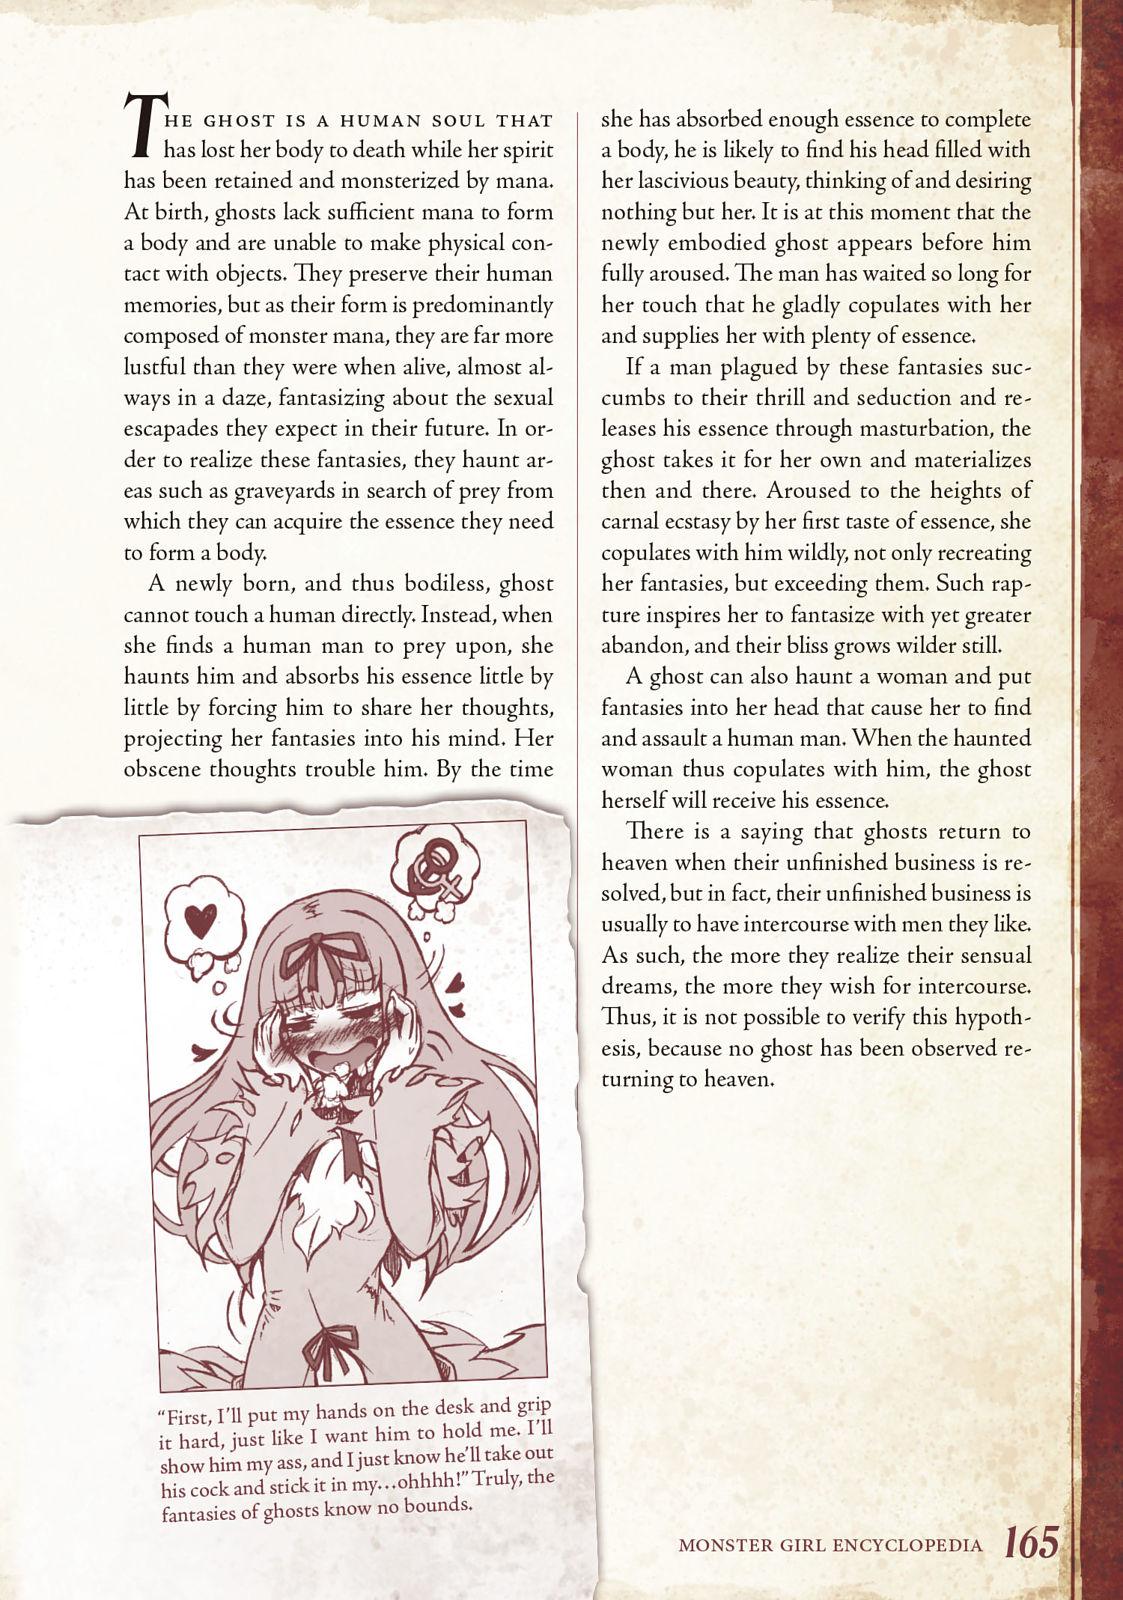 Monster Girl Encyclopedia Vol. 1 165